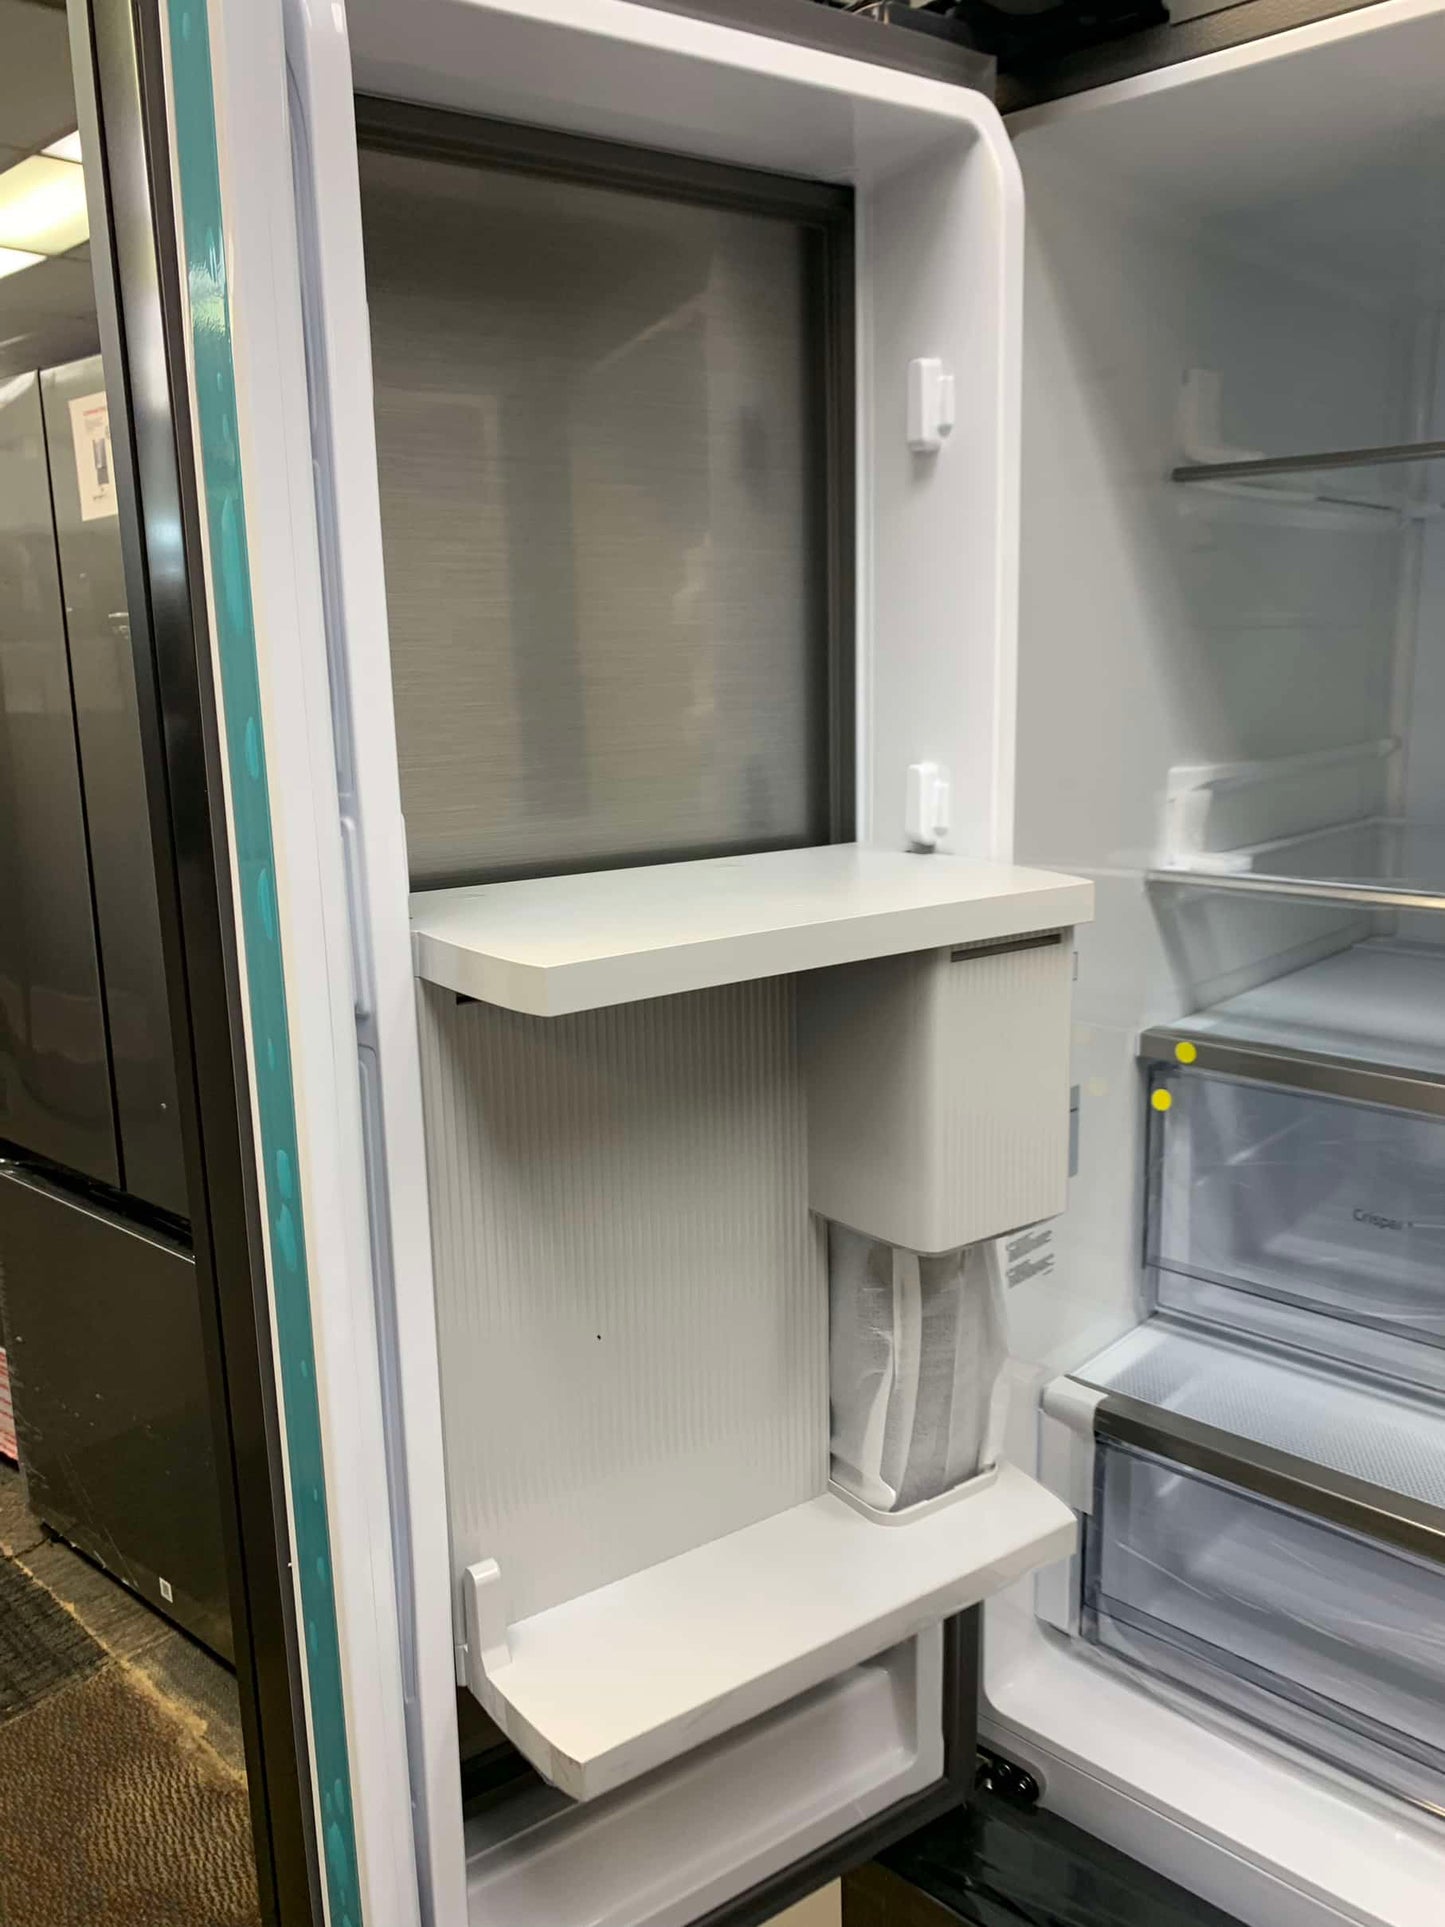 ★ Samsung Bespoke Open Box 30 cu. ft. 3-Door French Door Smart Refrigerator with Beverage Center in Stainless Steel, Standard 36” Depth RF789 - ST2